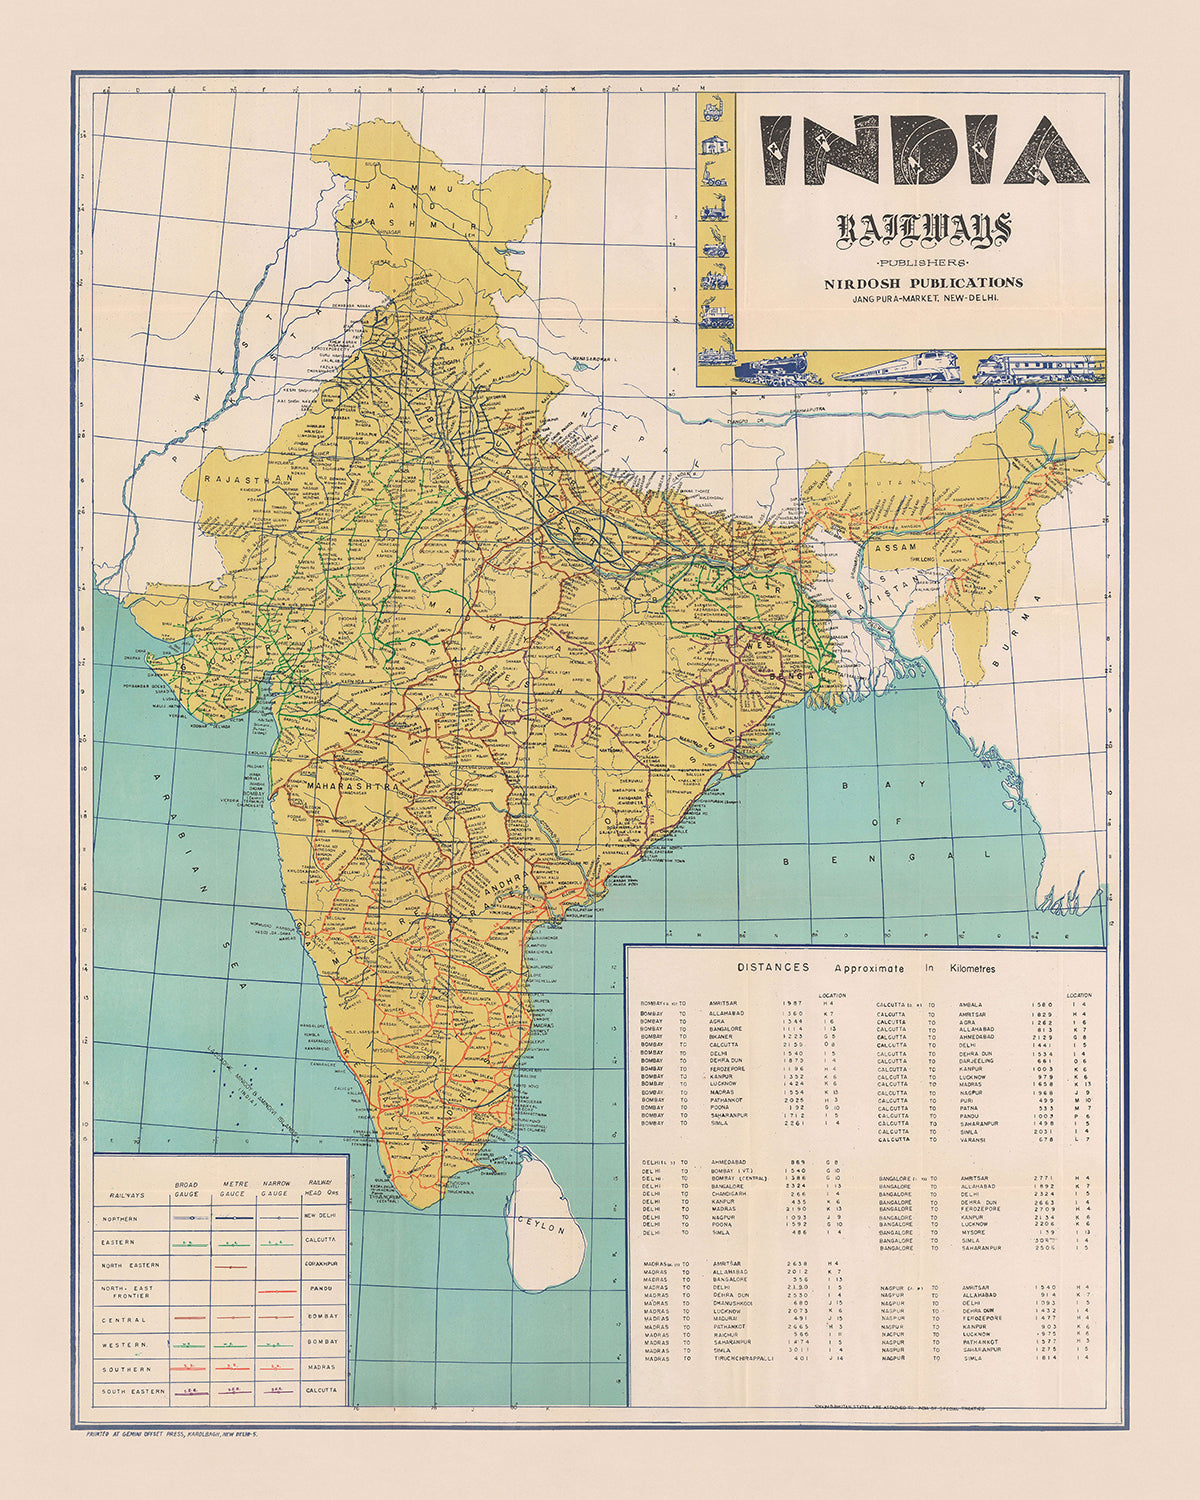 Old Map of India's Railways by Nirdosh, 1960: Mumbai, Delhi, Kolkata, Chennai, Bangalore